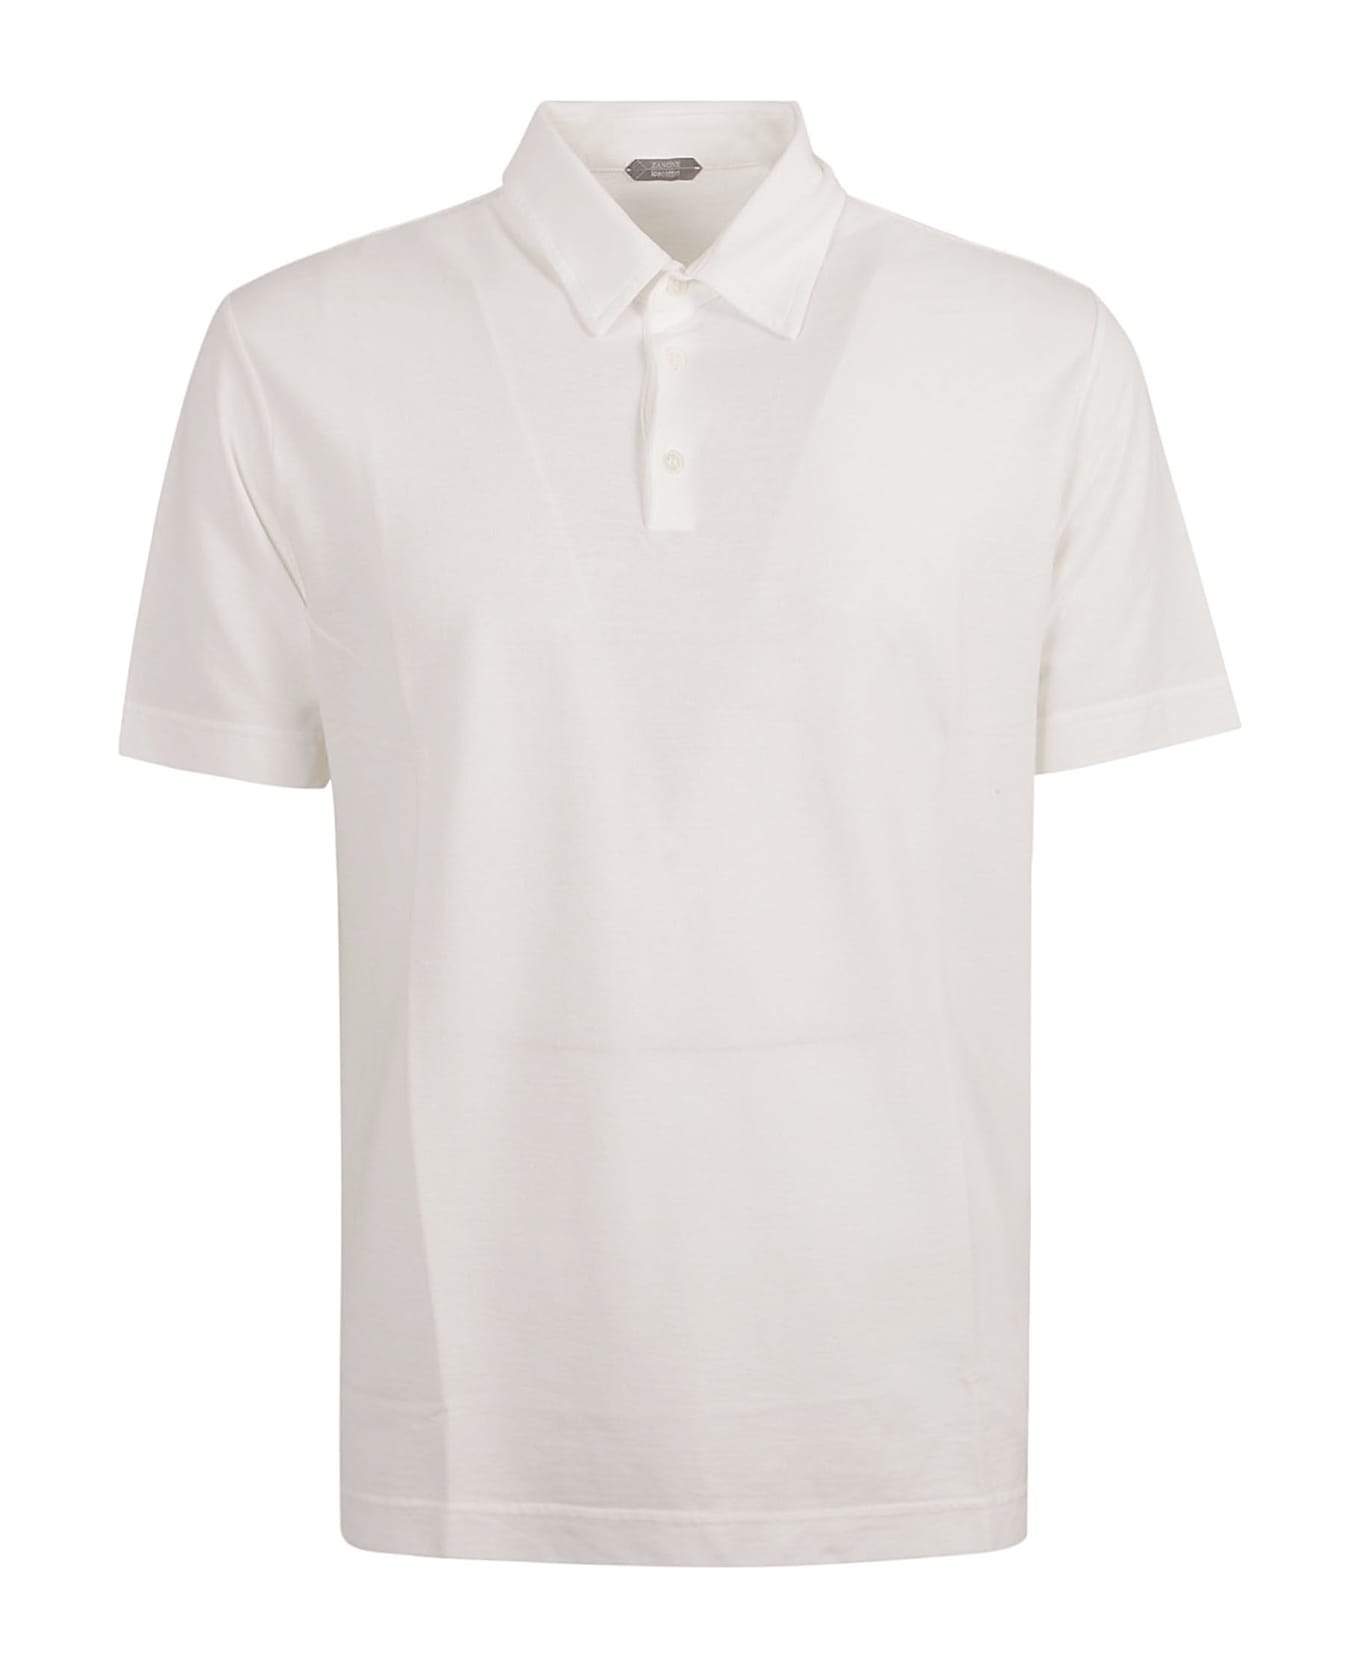 Zanone Regular Plain Polo Shirt - White Ottico